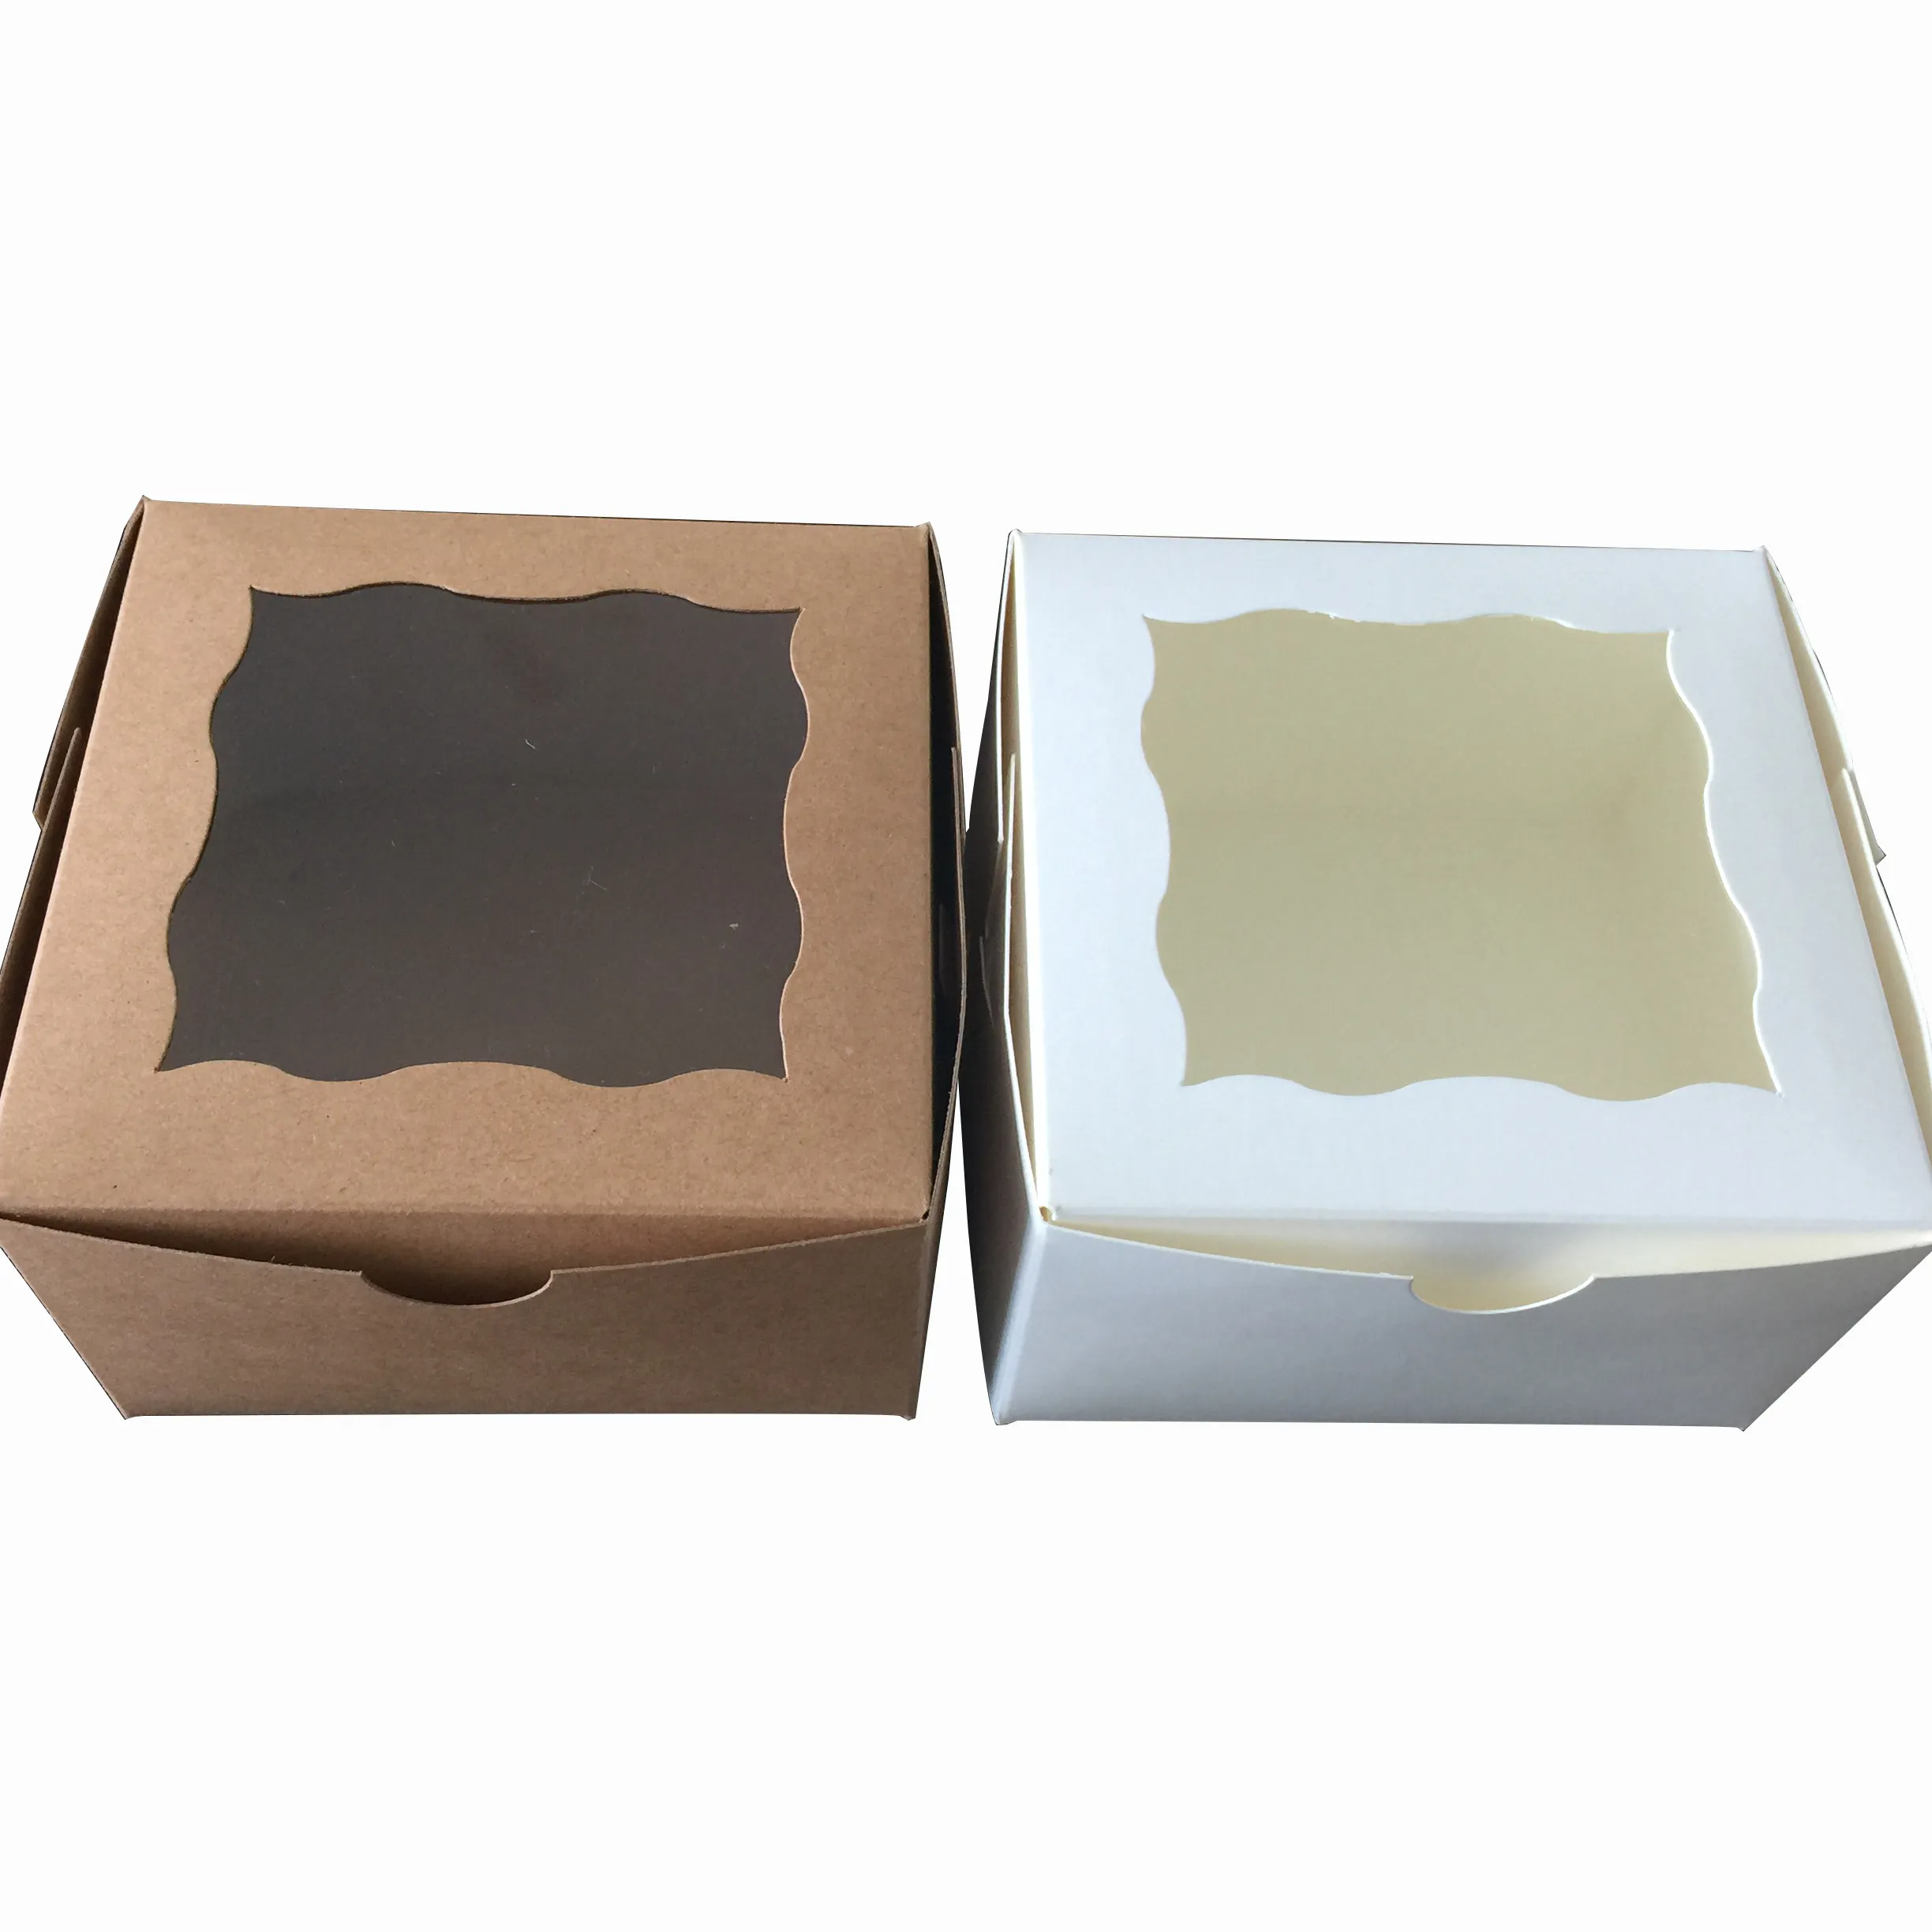 ドーナツミニケーキパイスライスデザート用の使い捨て持ち帰り用コンテナ4x4x2.5インチクラフト紙ベーカリー包装箱